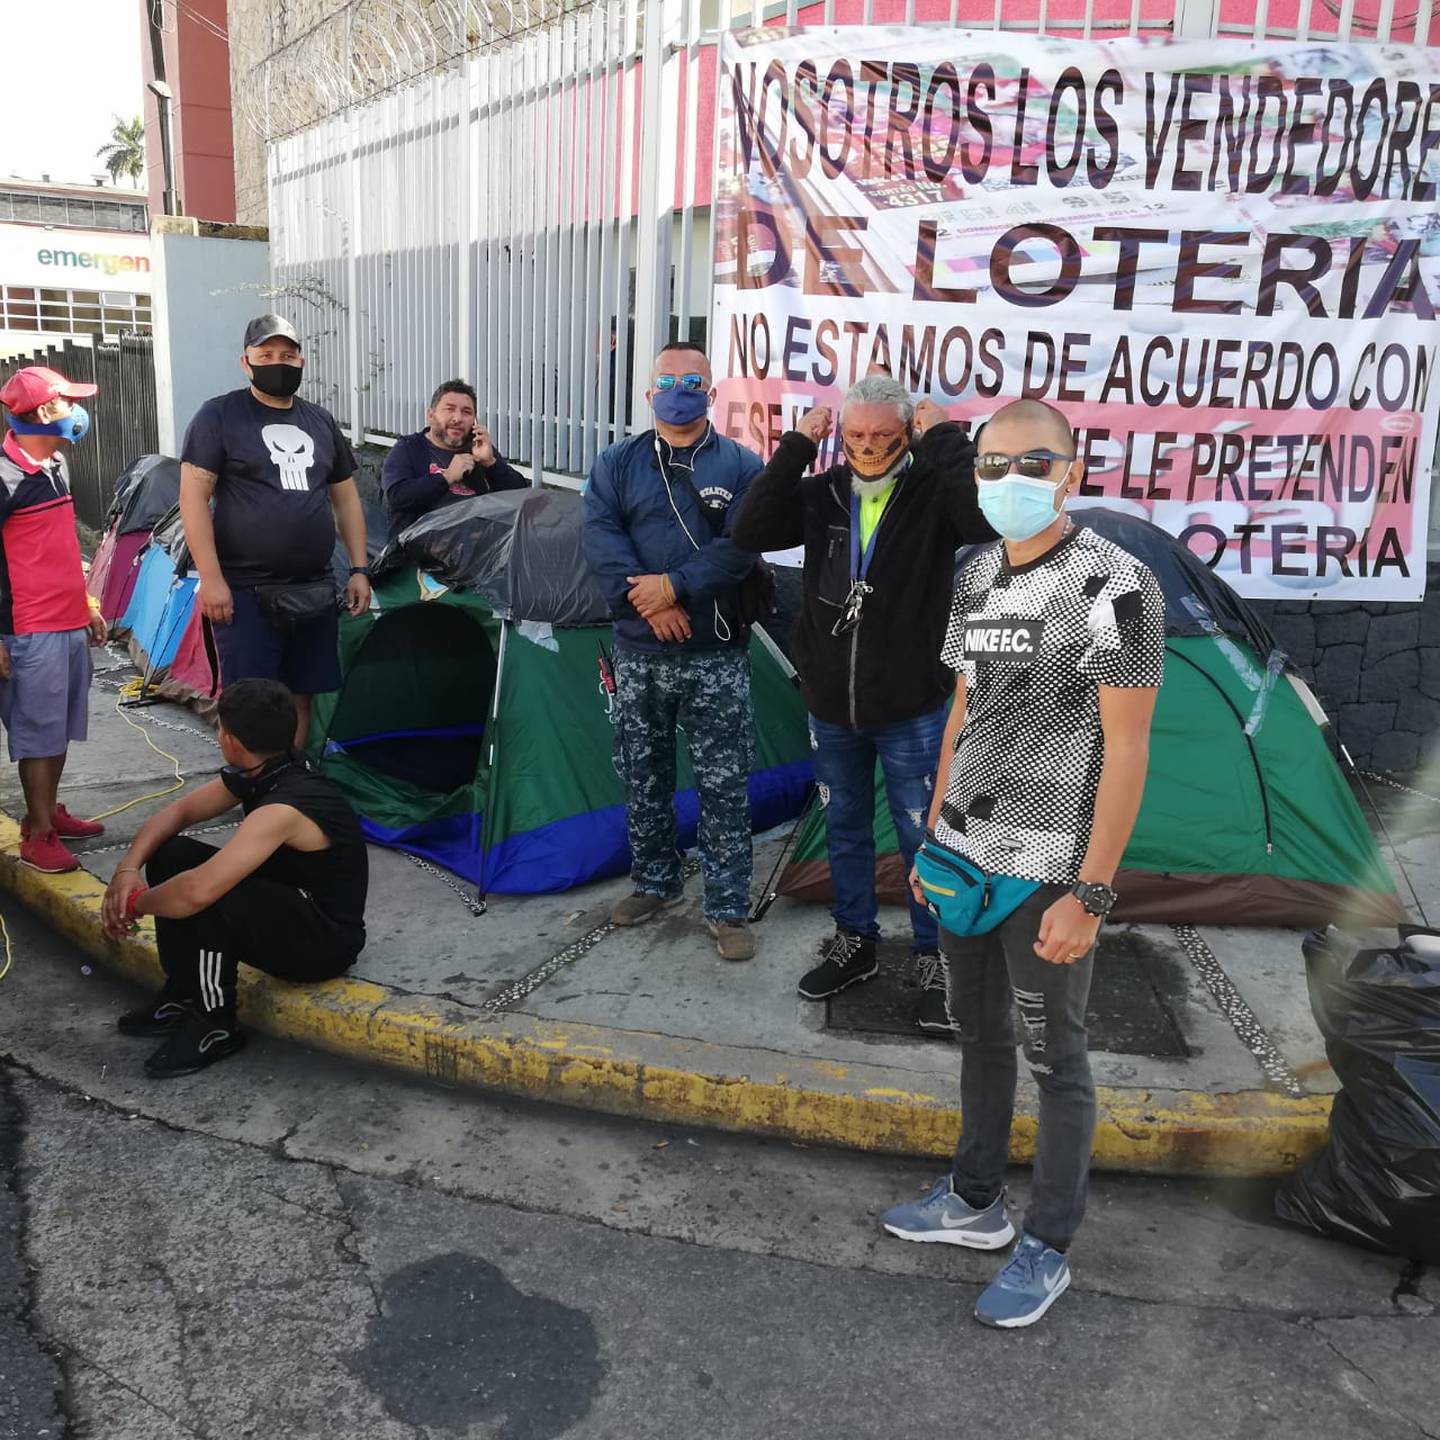 Unos 50 vendedores de lotería pasaron la noche del 30 de setiembre al 1 de octubre en tiendas de campaña frente al edificio de la Junta de Protección Social, en San José, protestando por lo que consideran injusticias